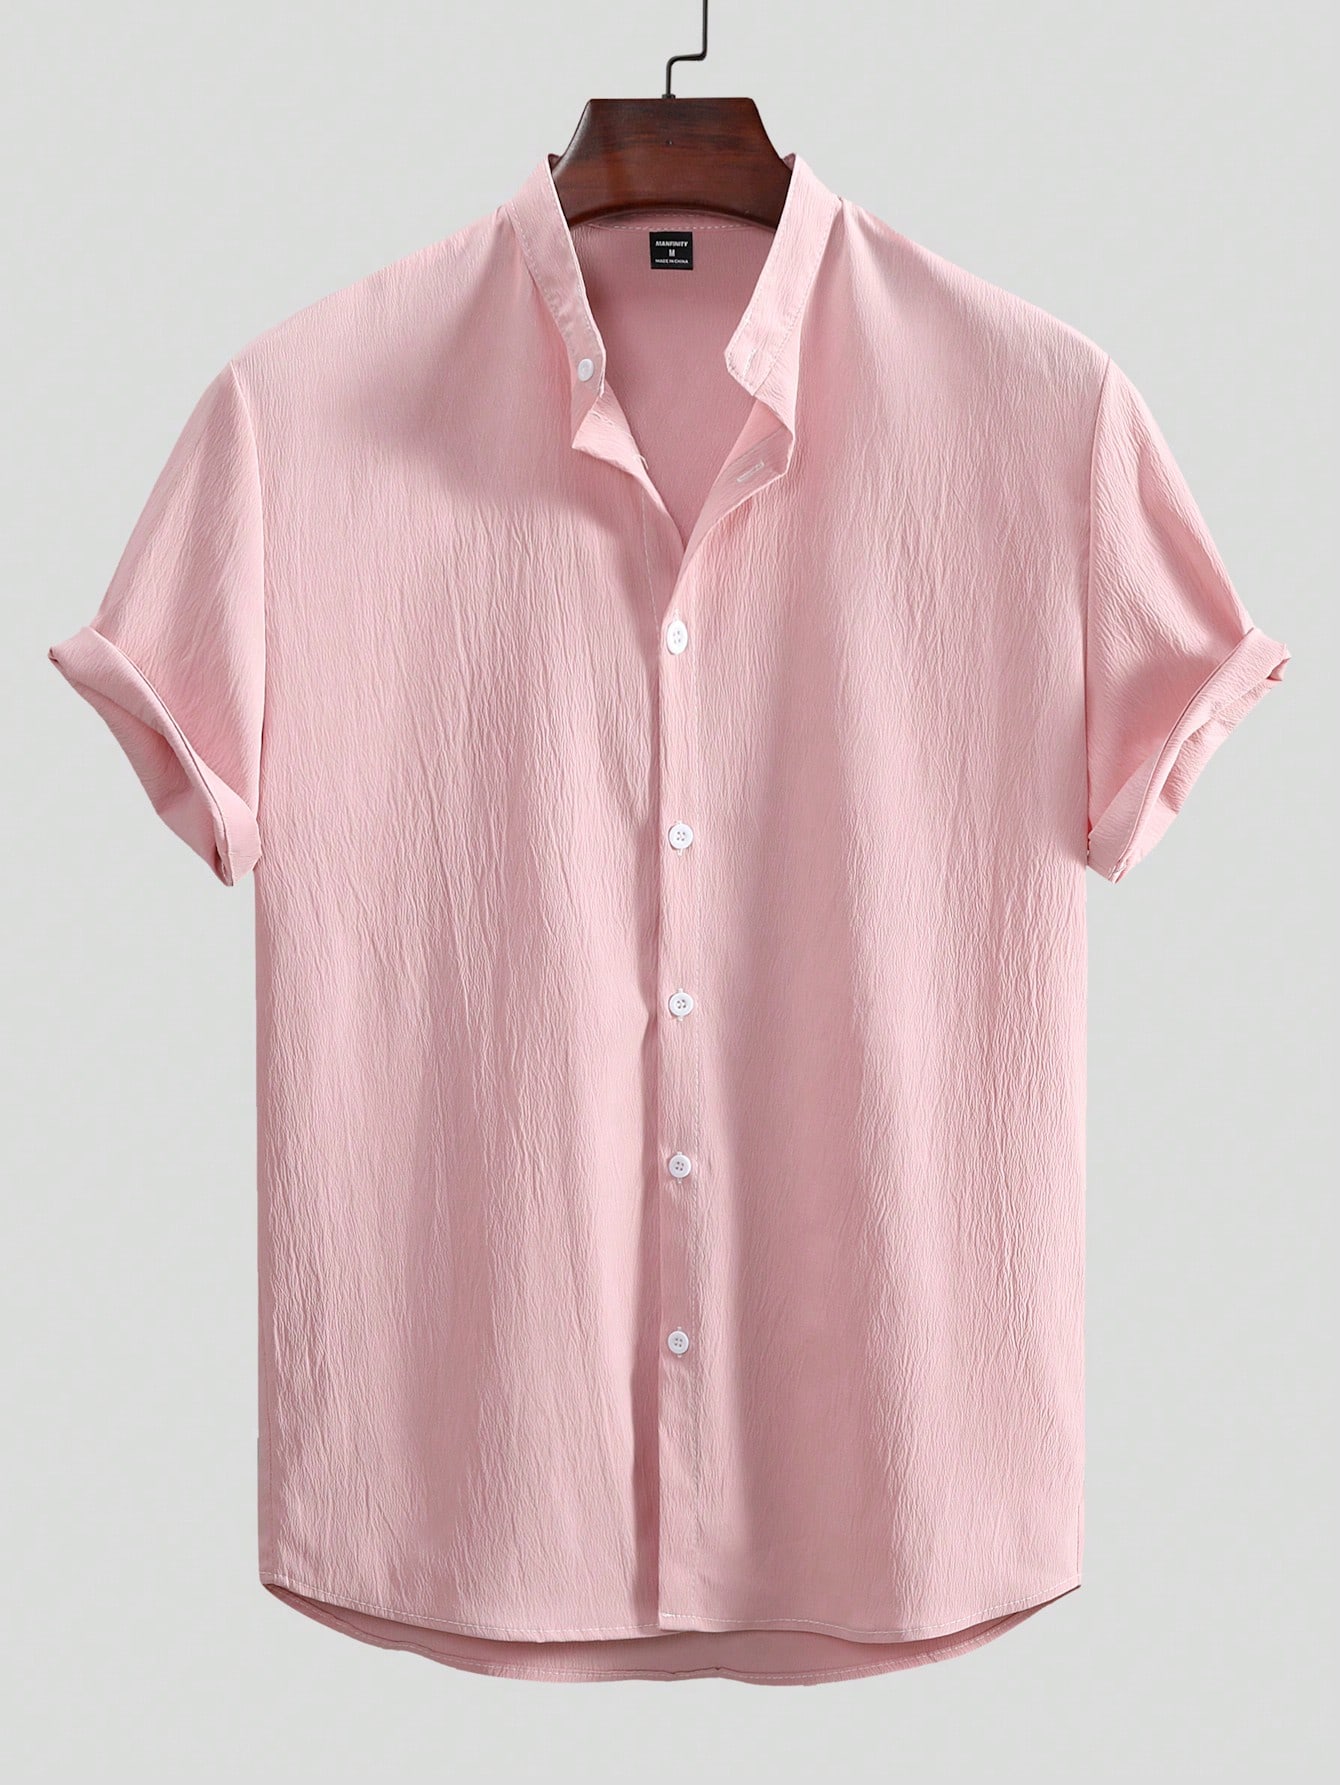 Мужская текстурированная рубашка с коротким рукавом Manfinity Homme на пуговицах спереди, розовый мужская текстурированная рубашка с коротким рукавом manfinity homme на пуговицах спереди розовый